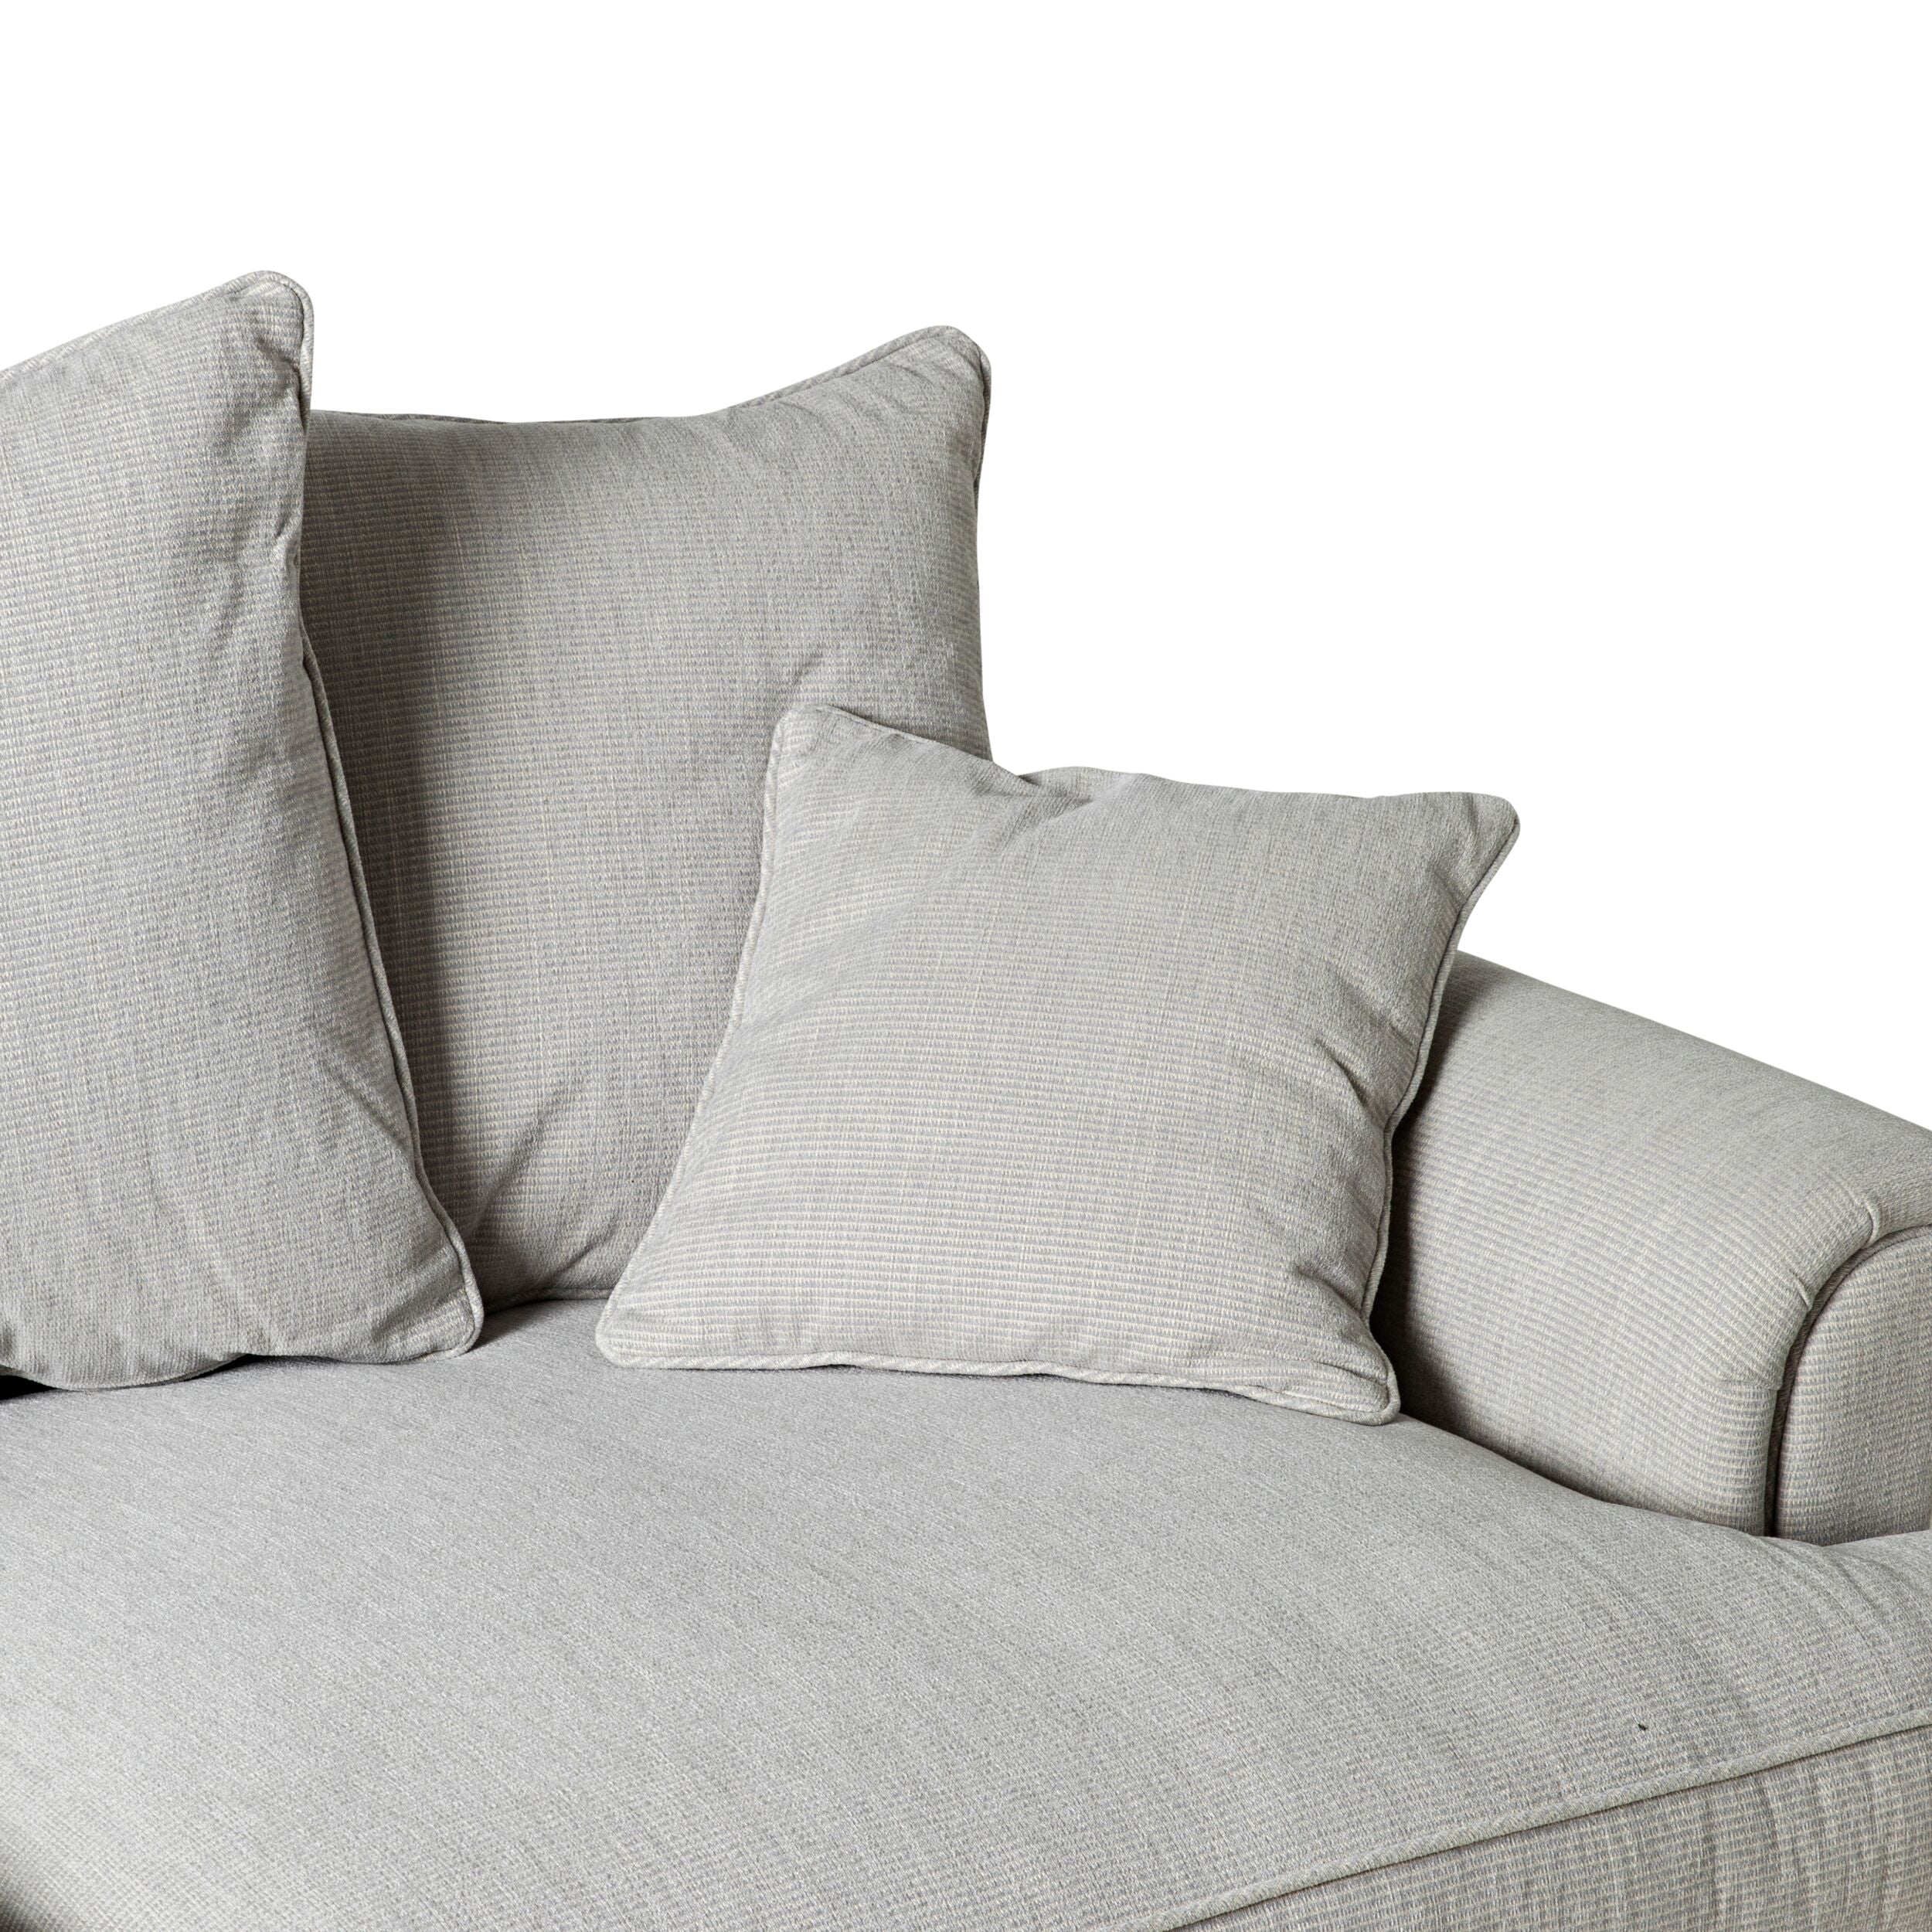 Lisette 3.5 Seater Extra Deep Linen Weave Sofa Natural Cream Custom C-002